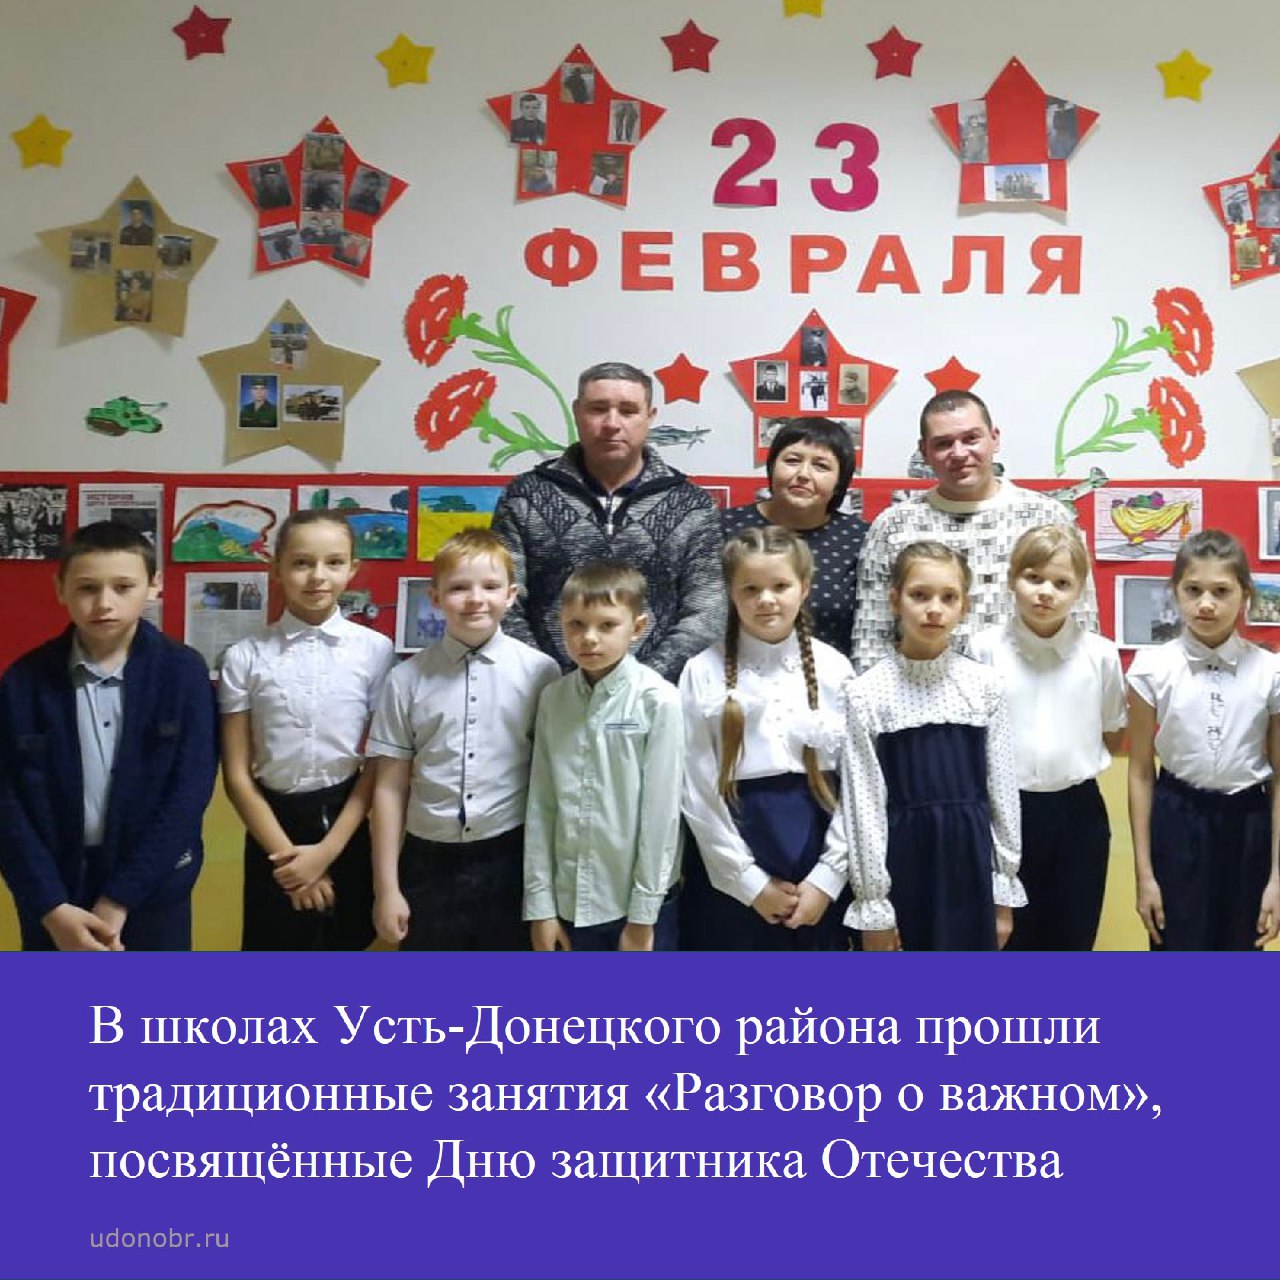 В школах Усть-Донецкого района прошли традиционные занятия «Разговор о важном», посвящённые Дню защитника Отечества